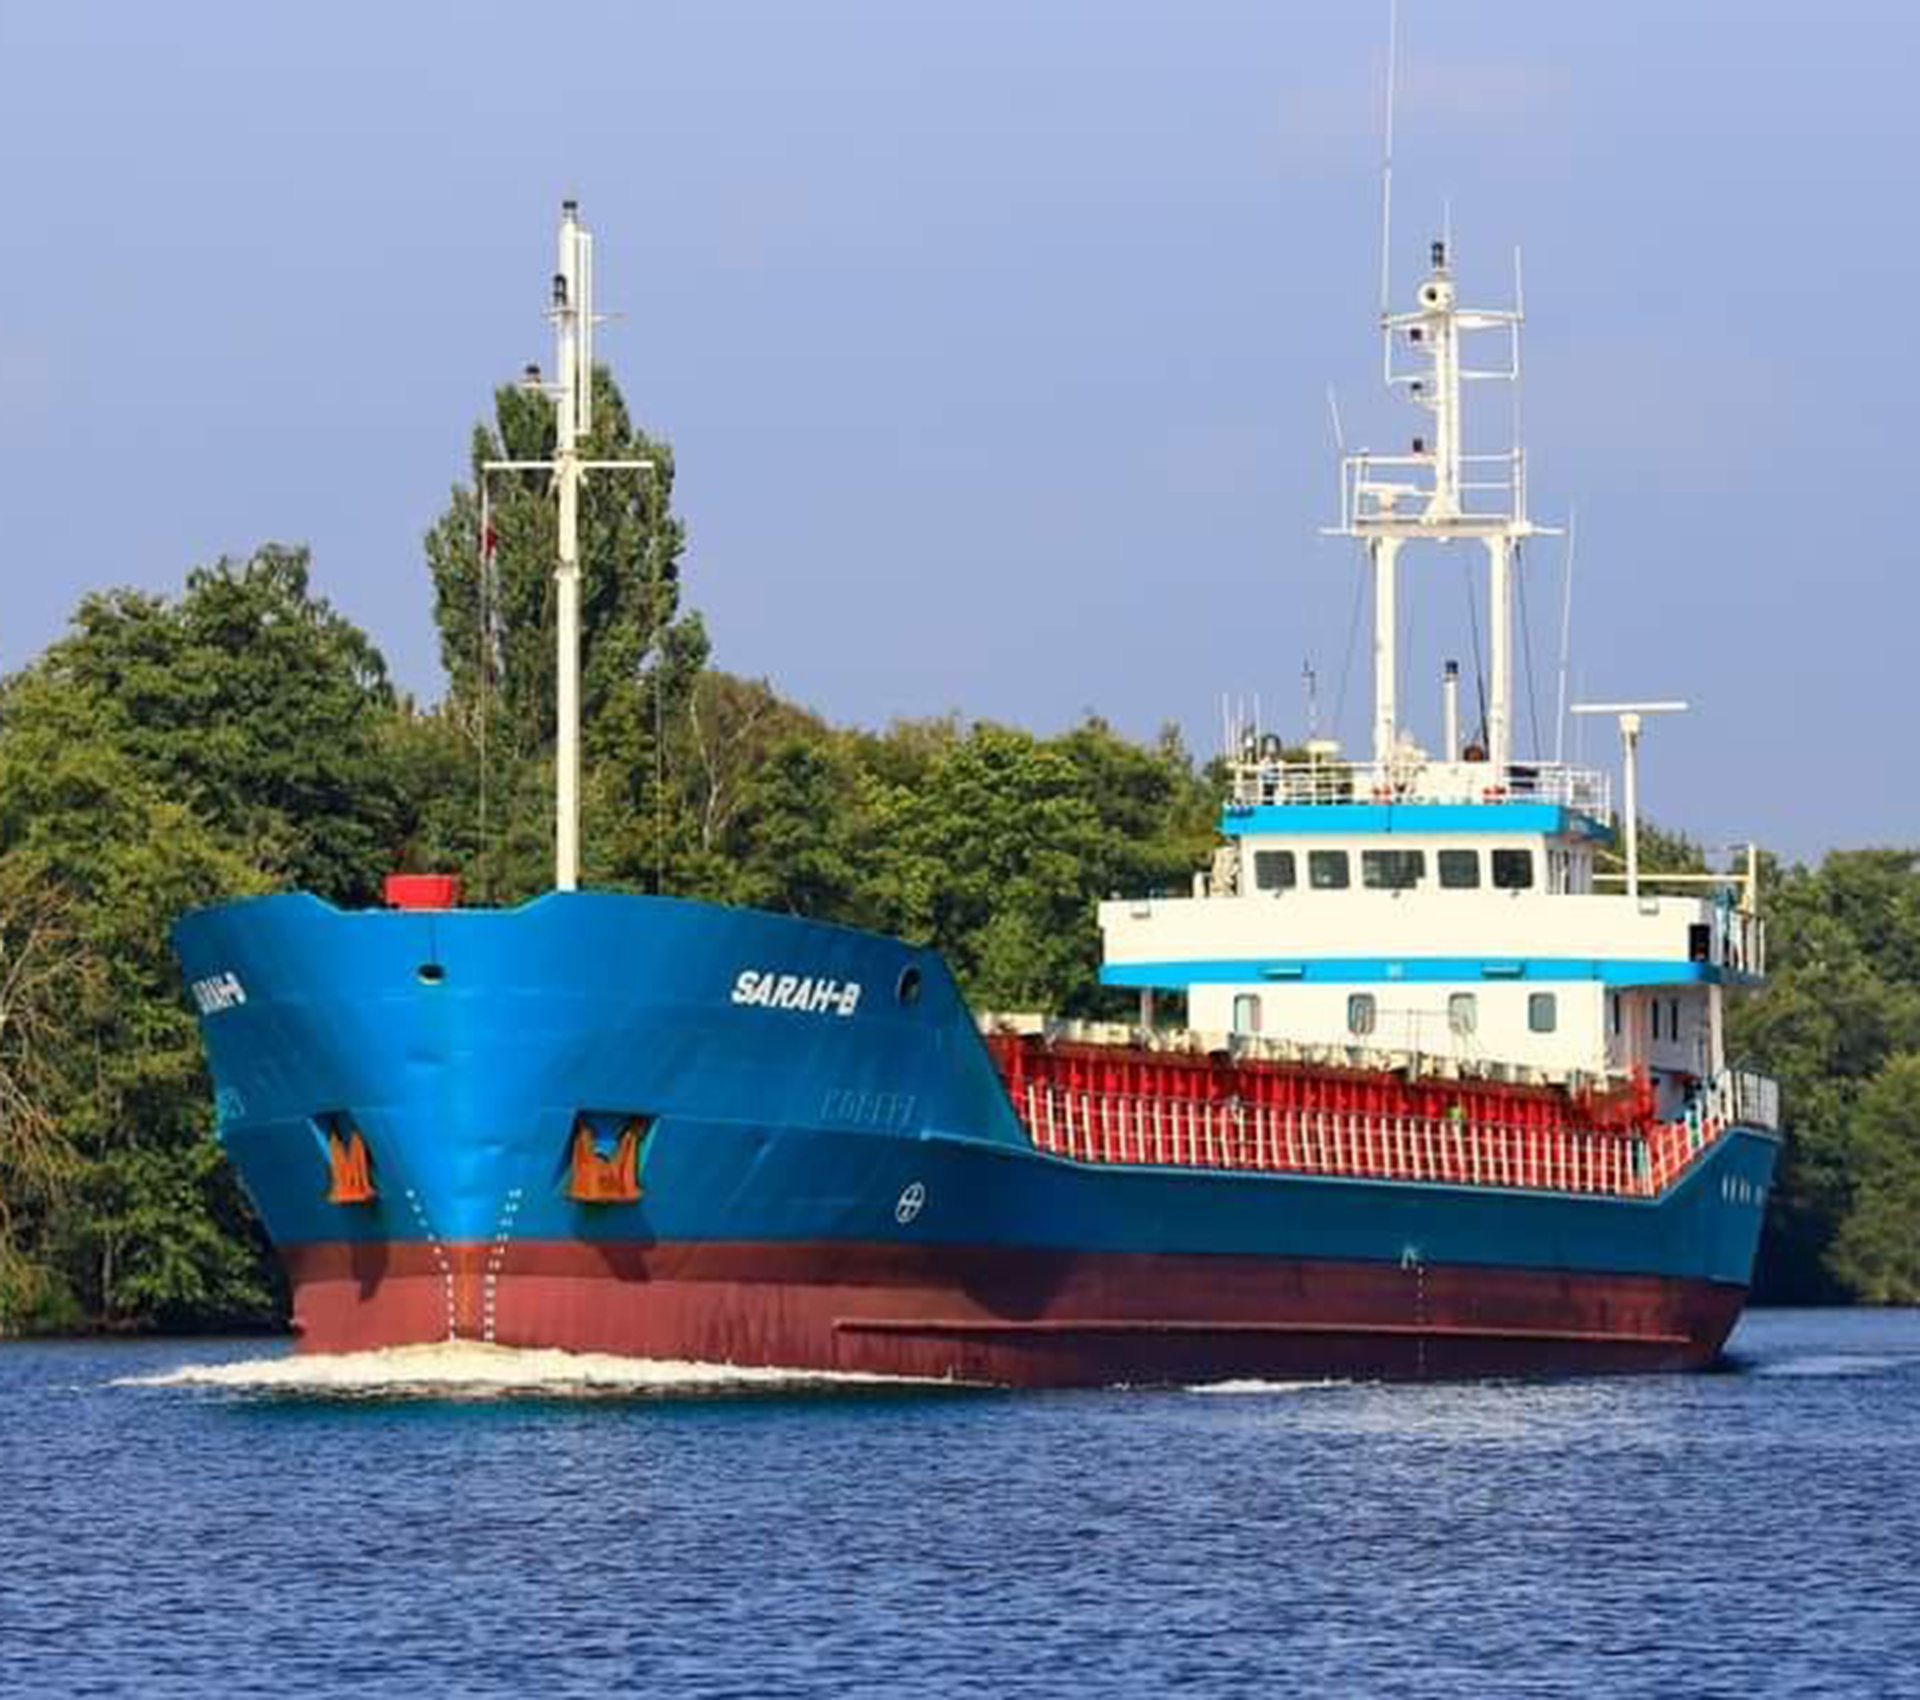 Das Schiff 'Sarah-B' von JEB transportiert Güter